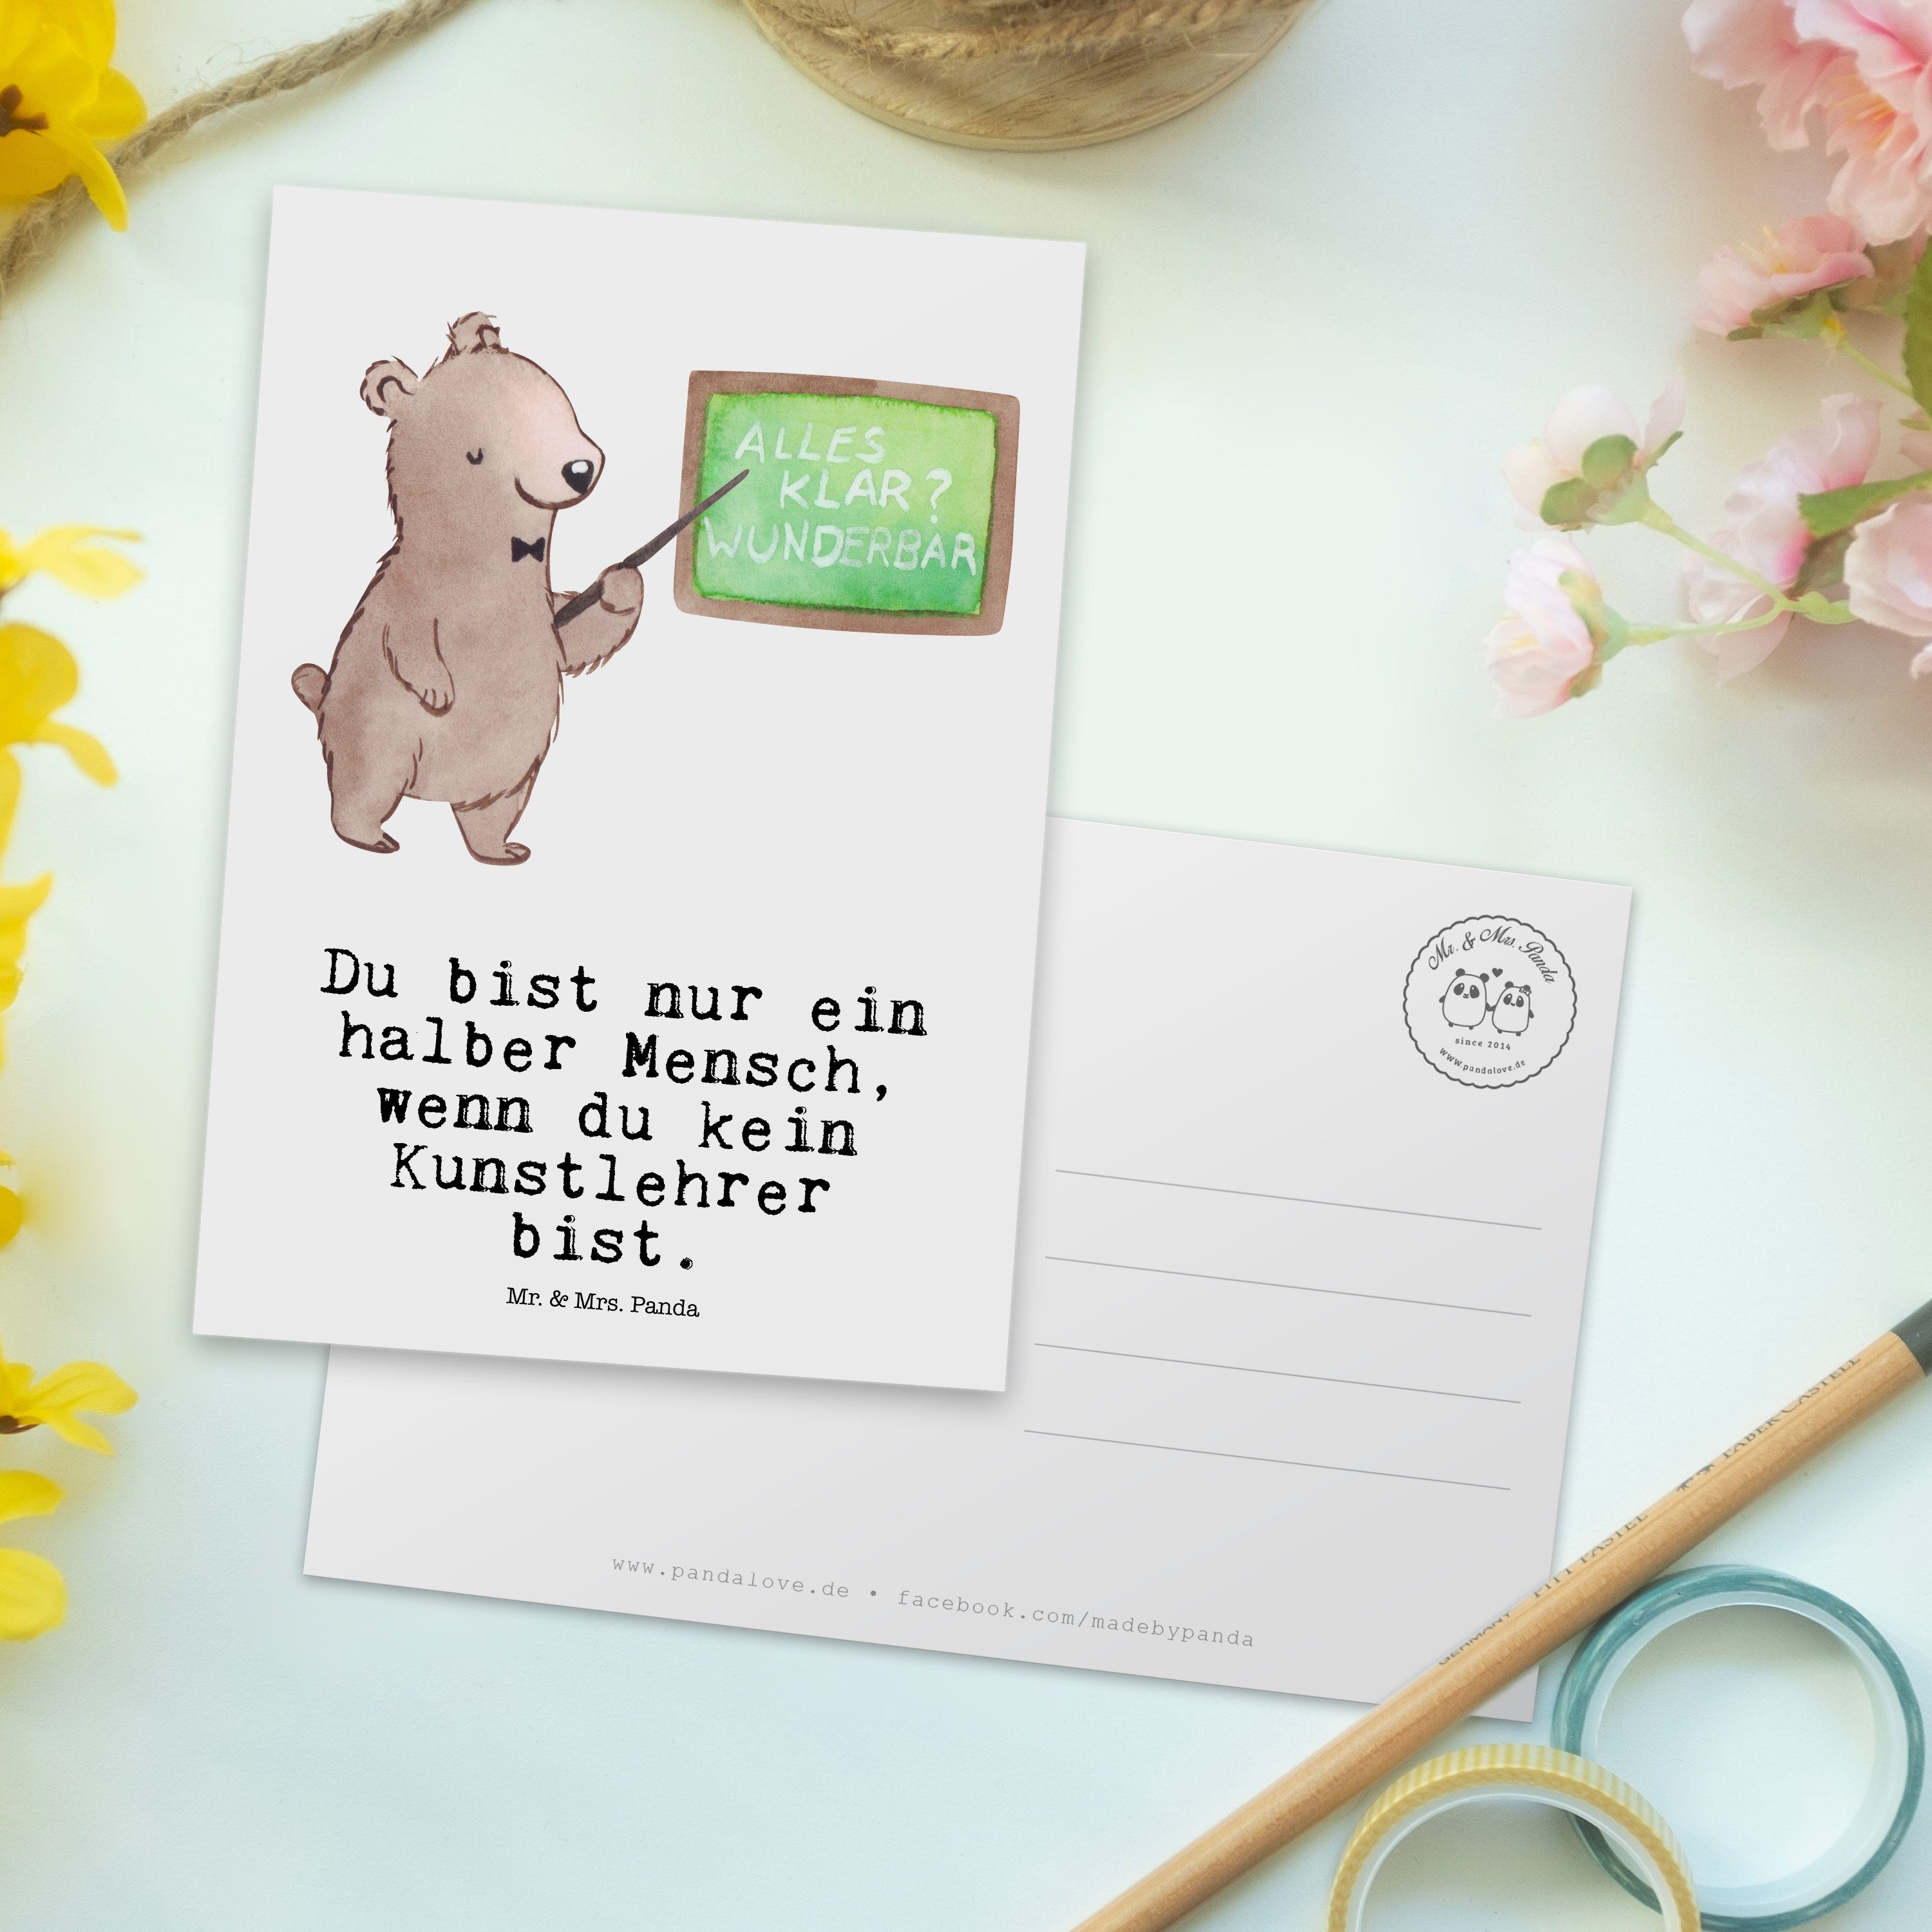 Mr. & Mrs. Panda Weiß Herz Einladung, Kunstlehrer Danke, Geschenk, Kunstunterr mit - Postkarte 